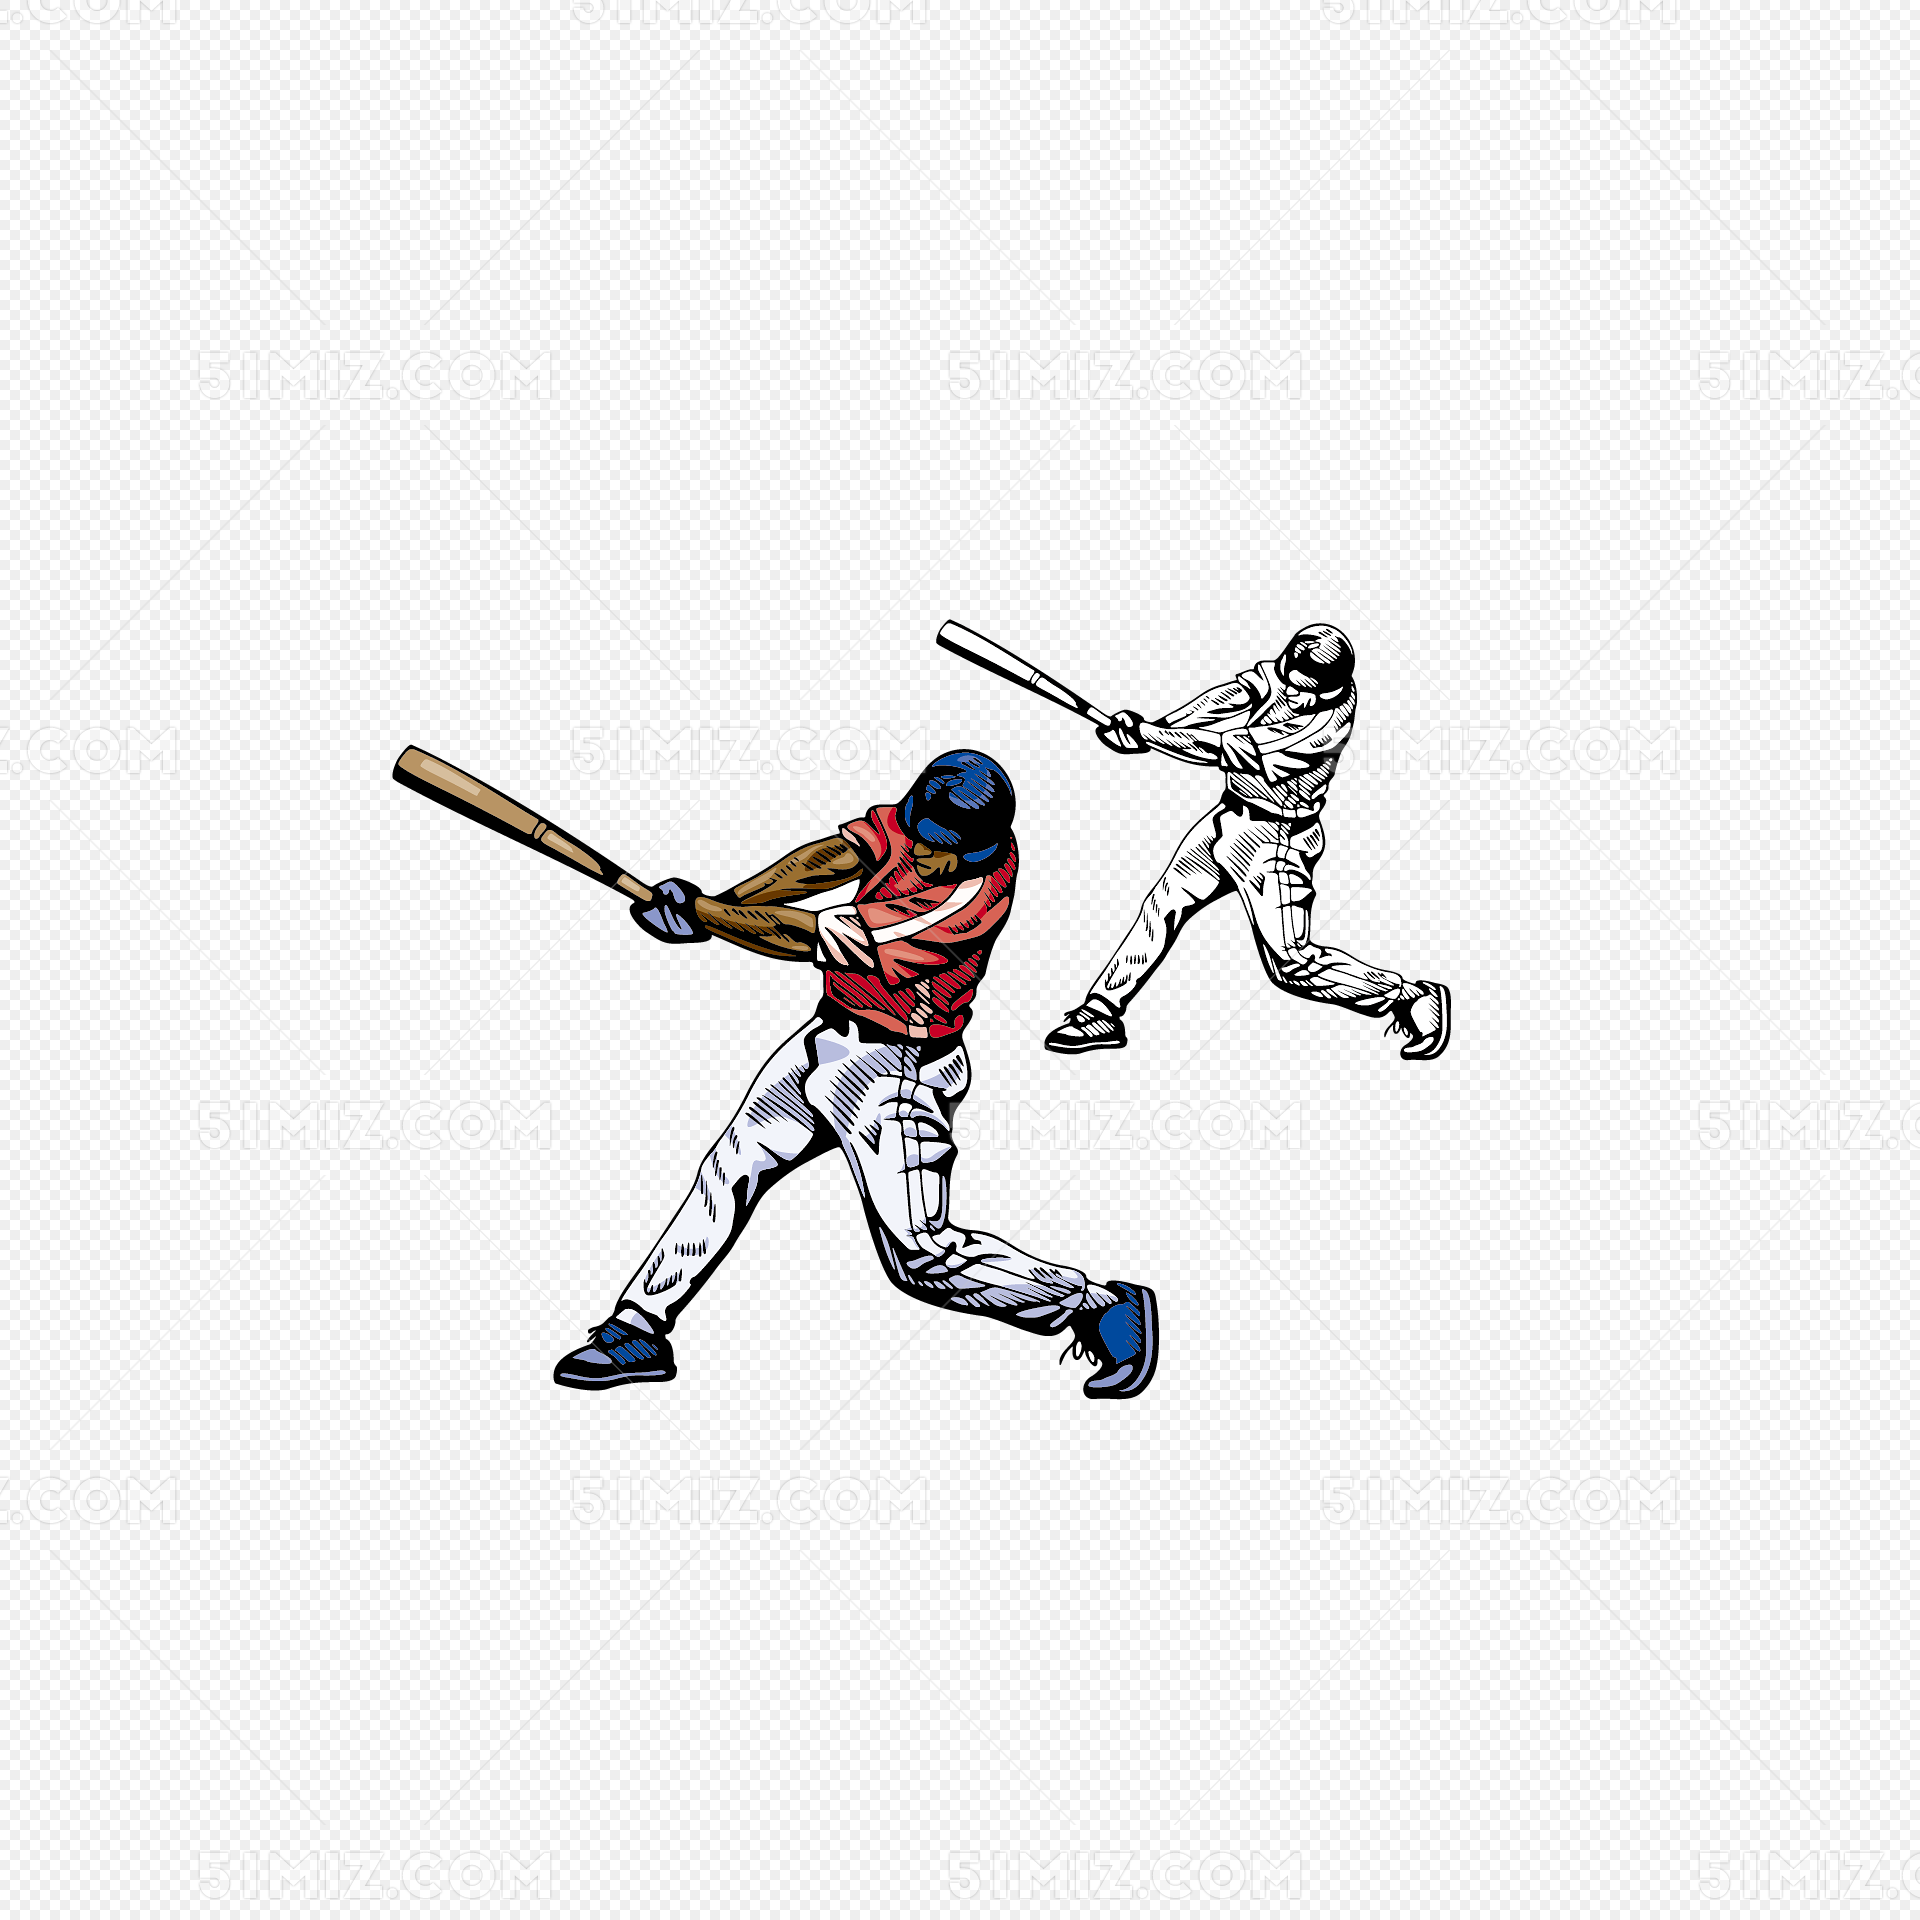 ボールスポーツ 野球の実例 手描き イラストイラスト画像とPSDフリー素材透過の無料ダウンロード - Pngtree